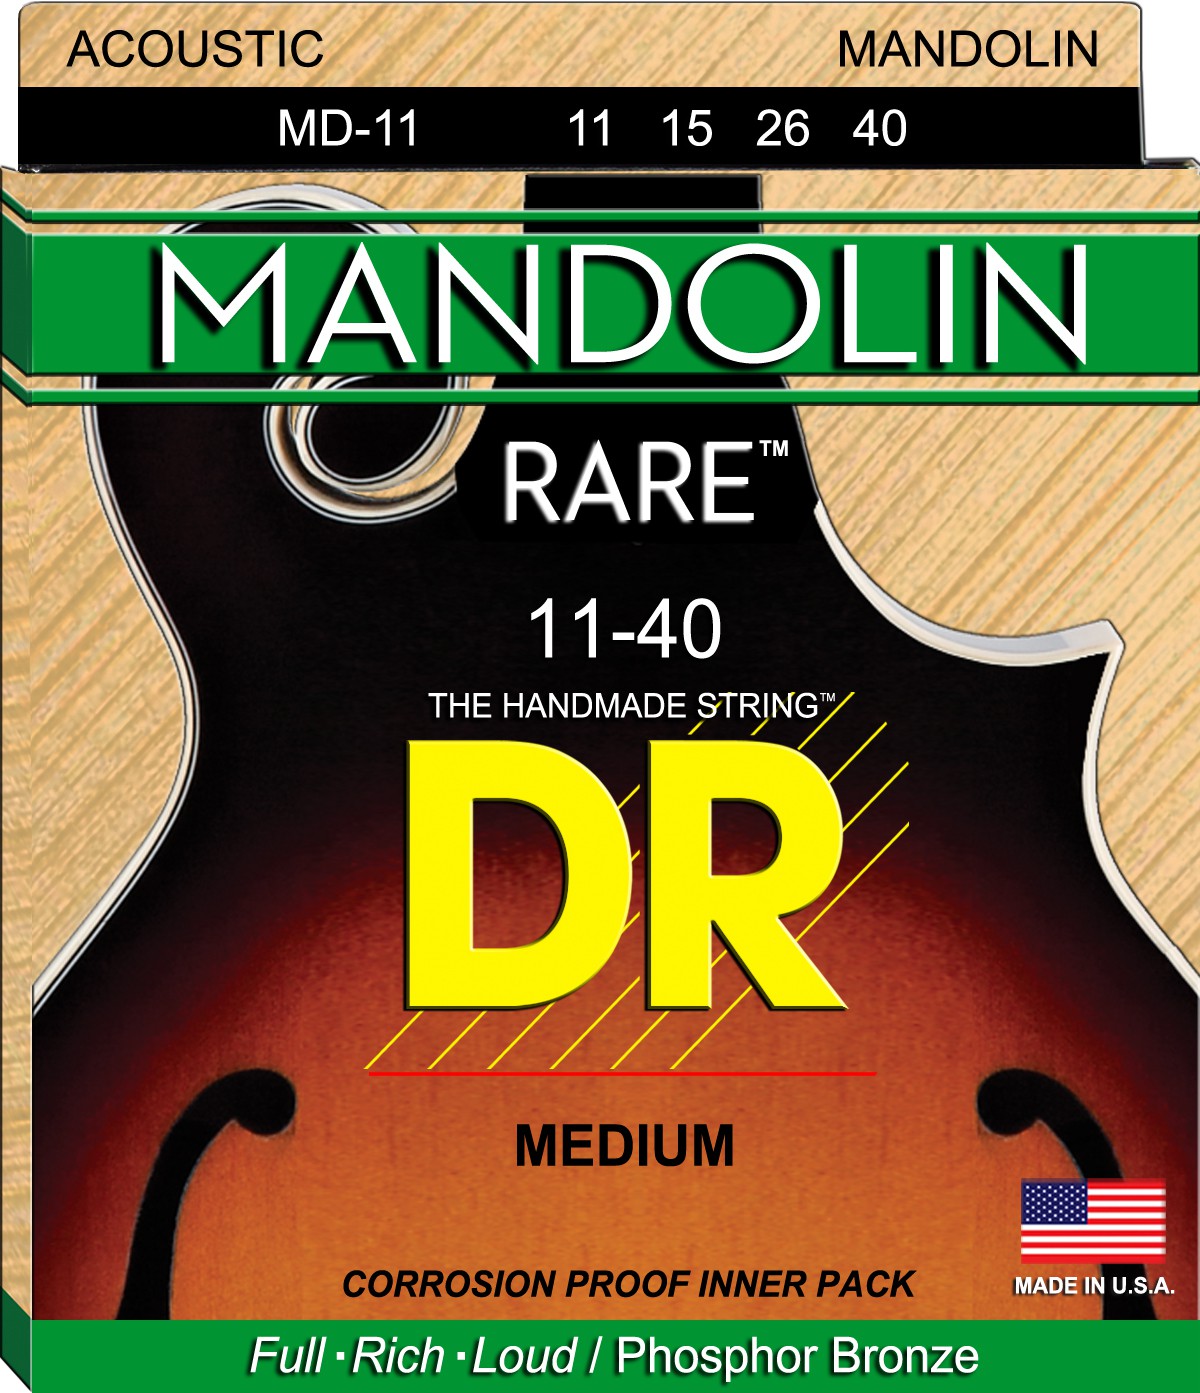 DR RARE - MD-11 - Mandolin String Set, 4-String, Medium, .011-.040